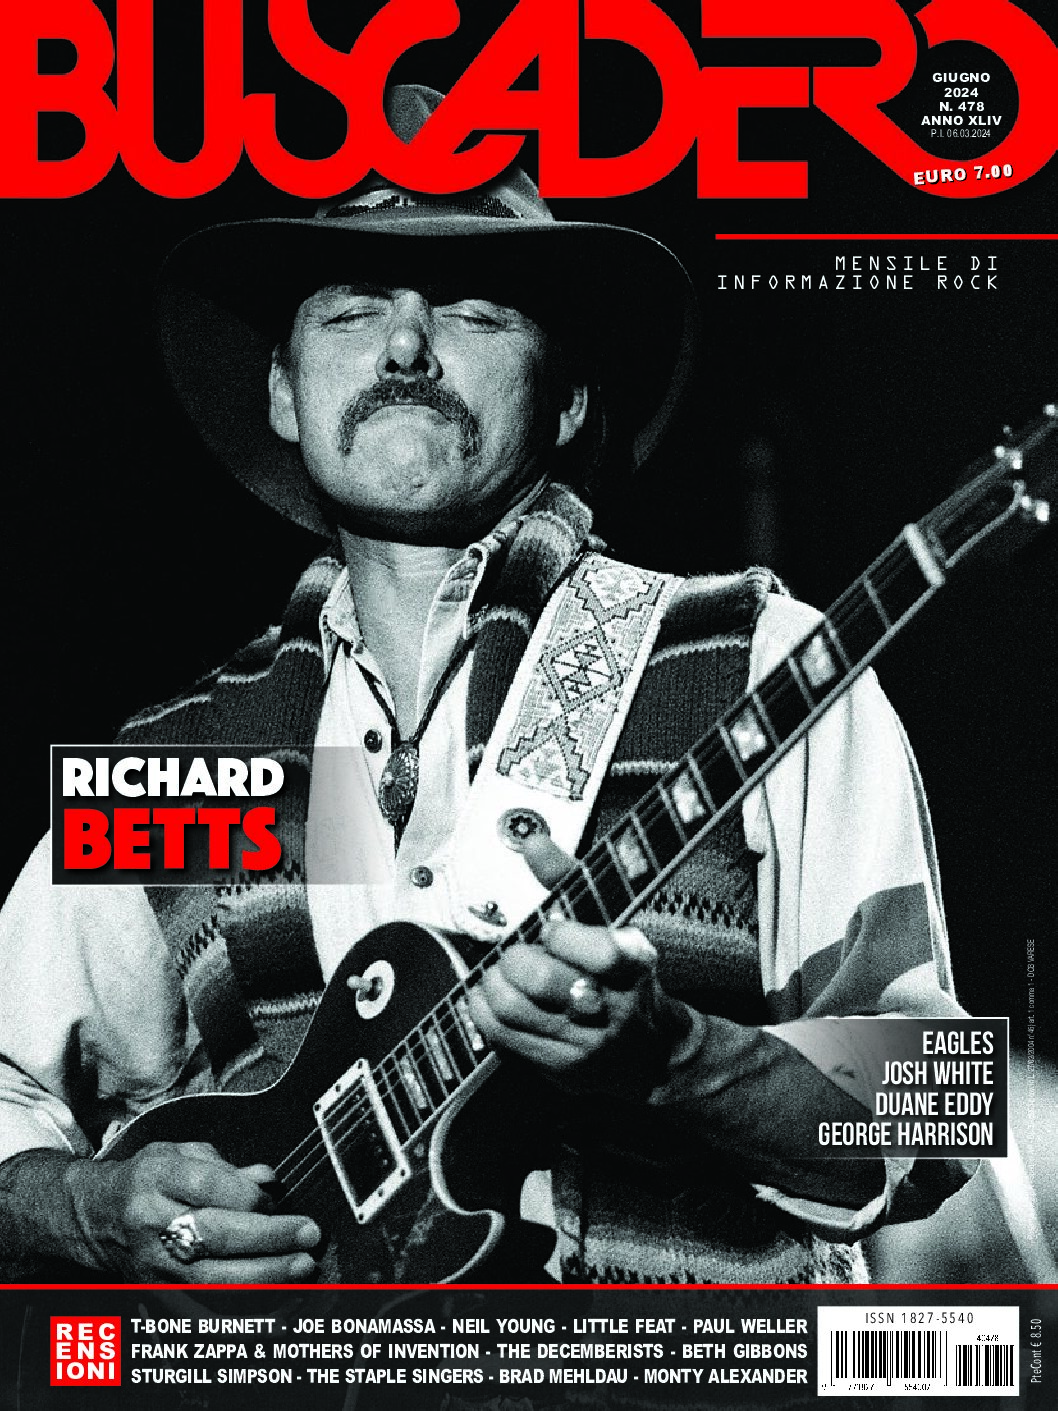 Cover of Buscadero magazine